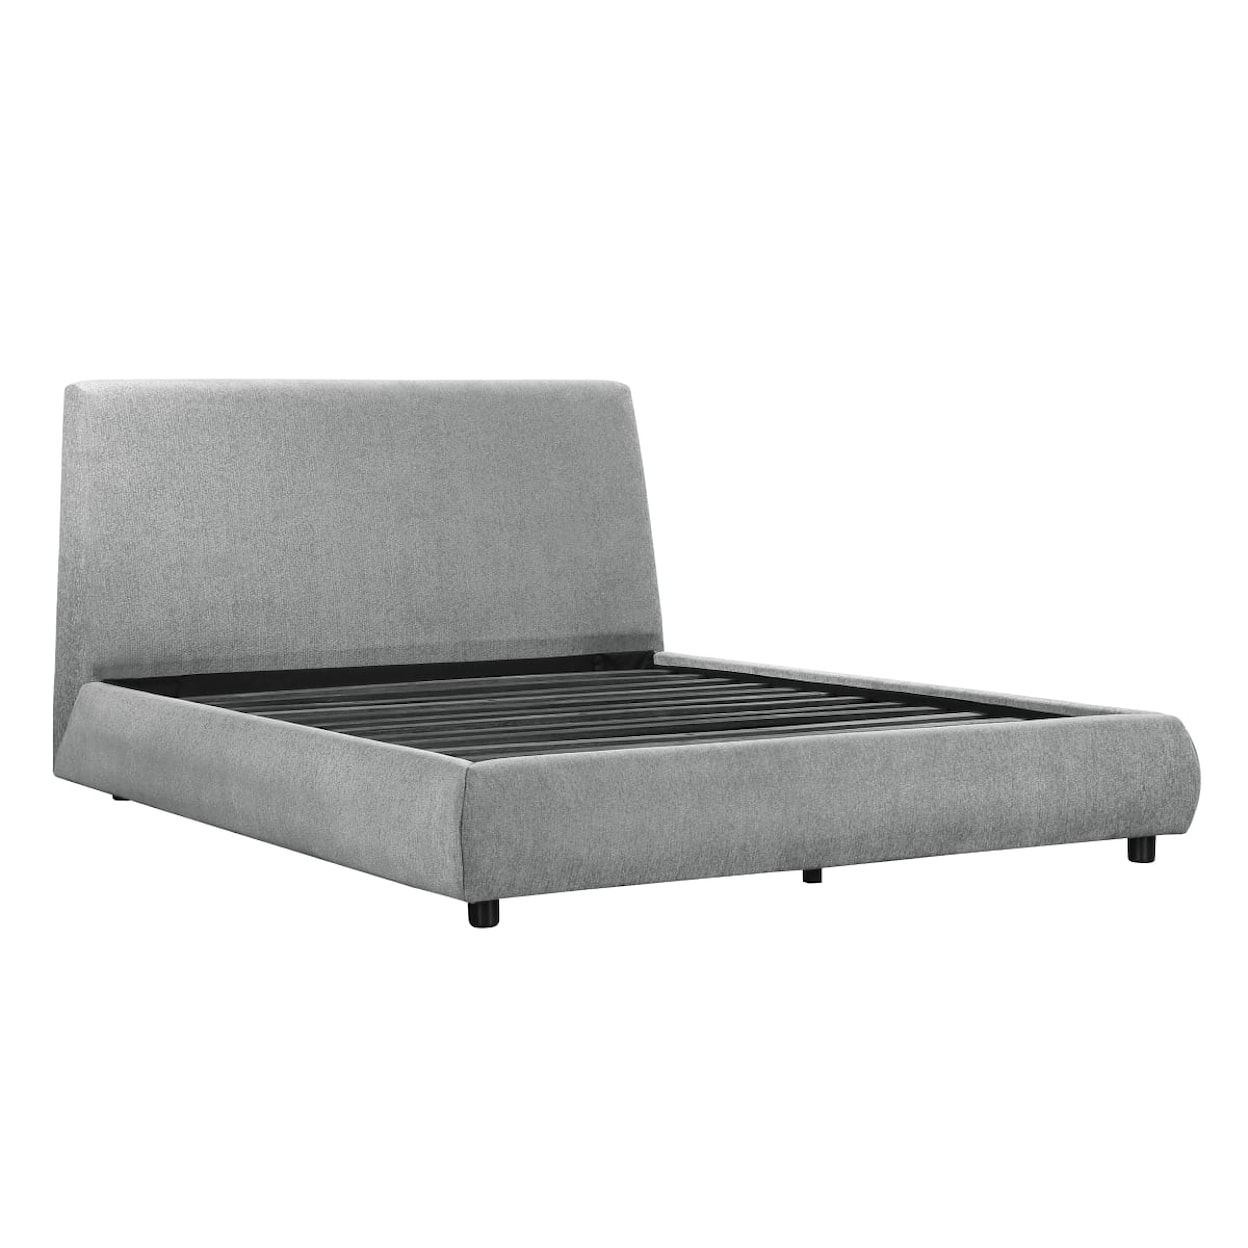 Homelegance Furniture Alford King Platform Bed